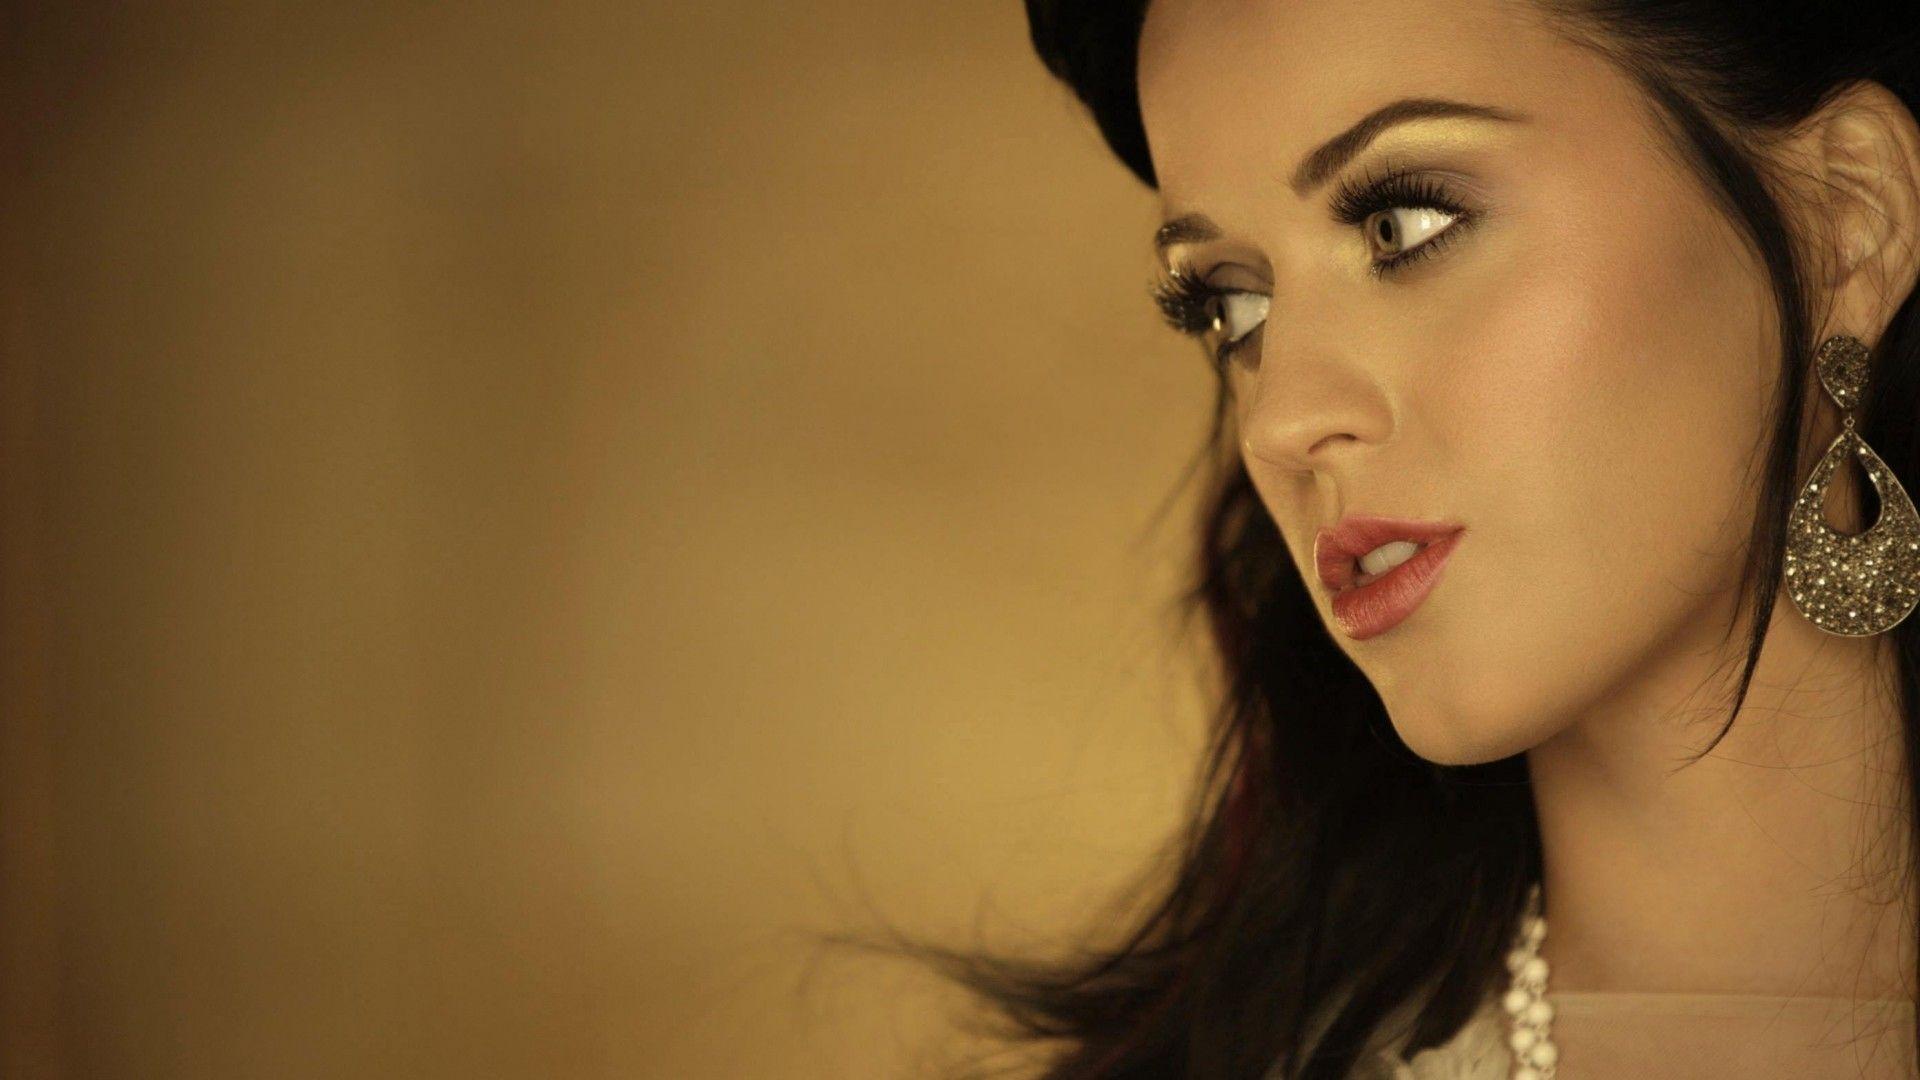 "Katy Perry en Juicio por Compra de Casa a Anciano"